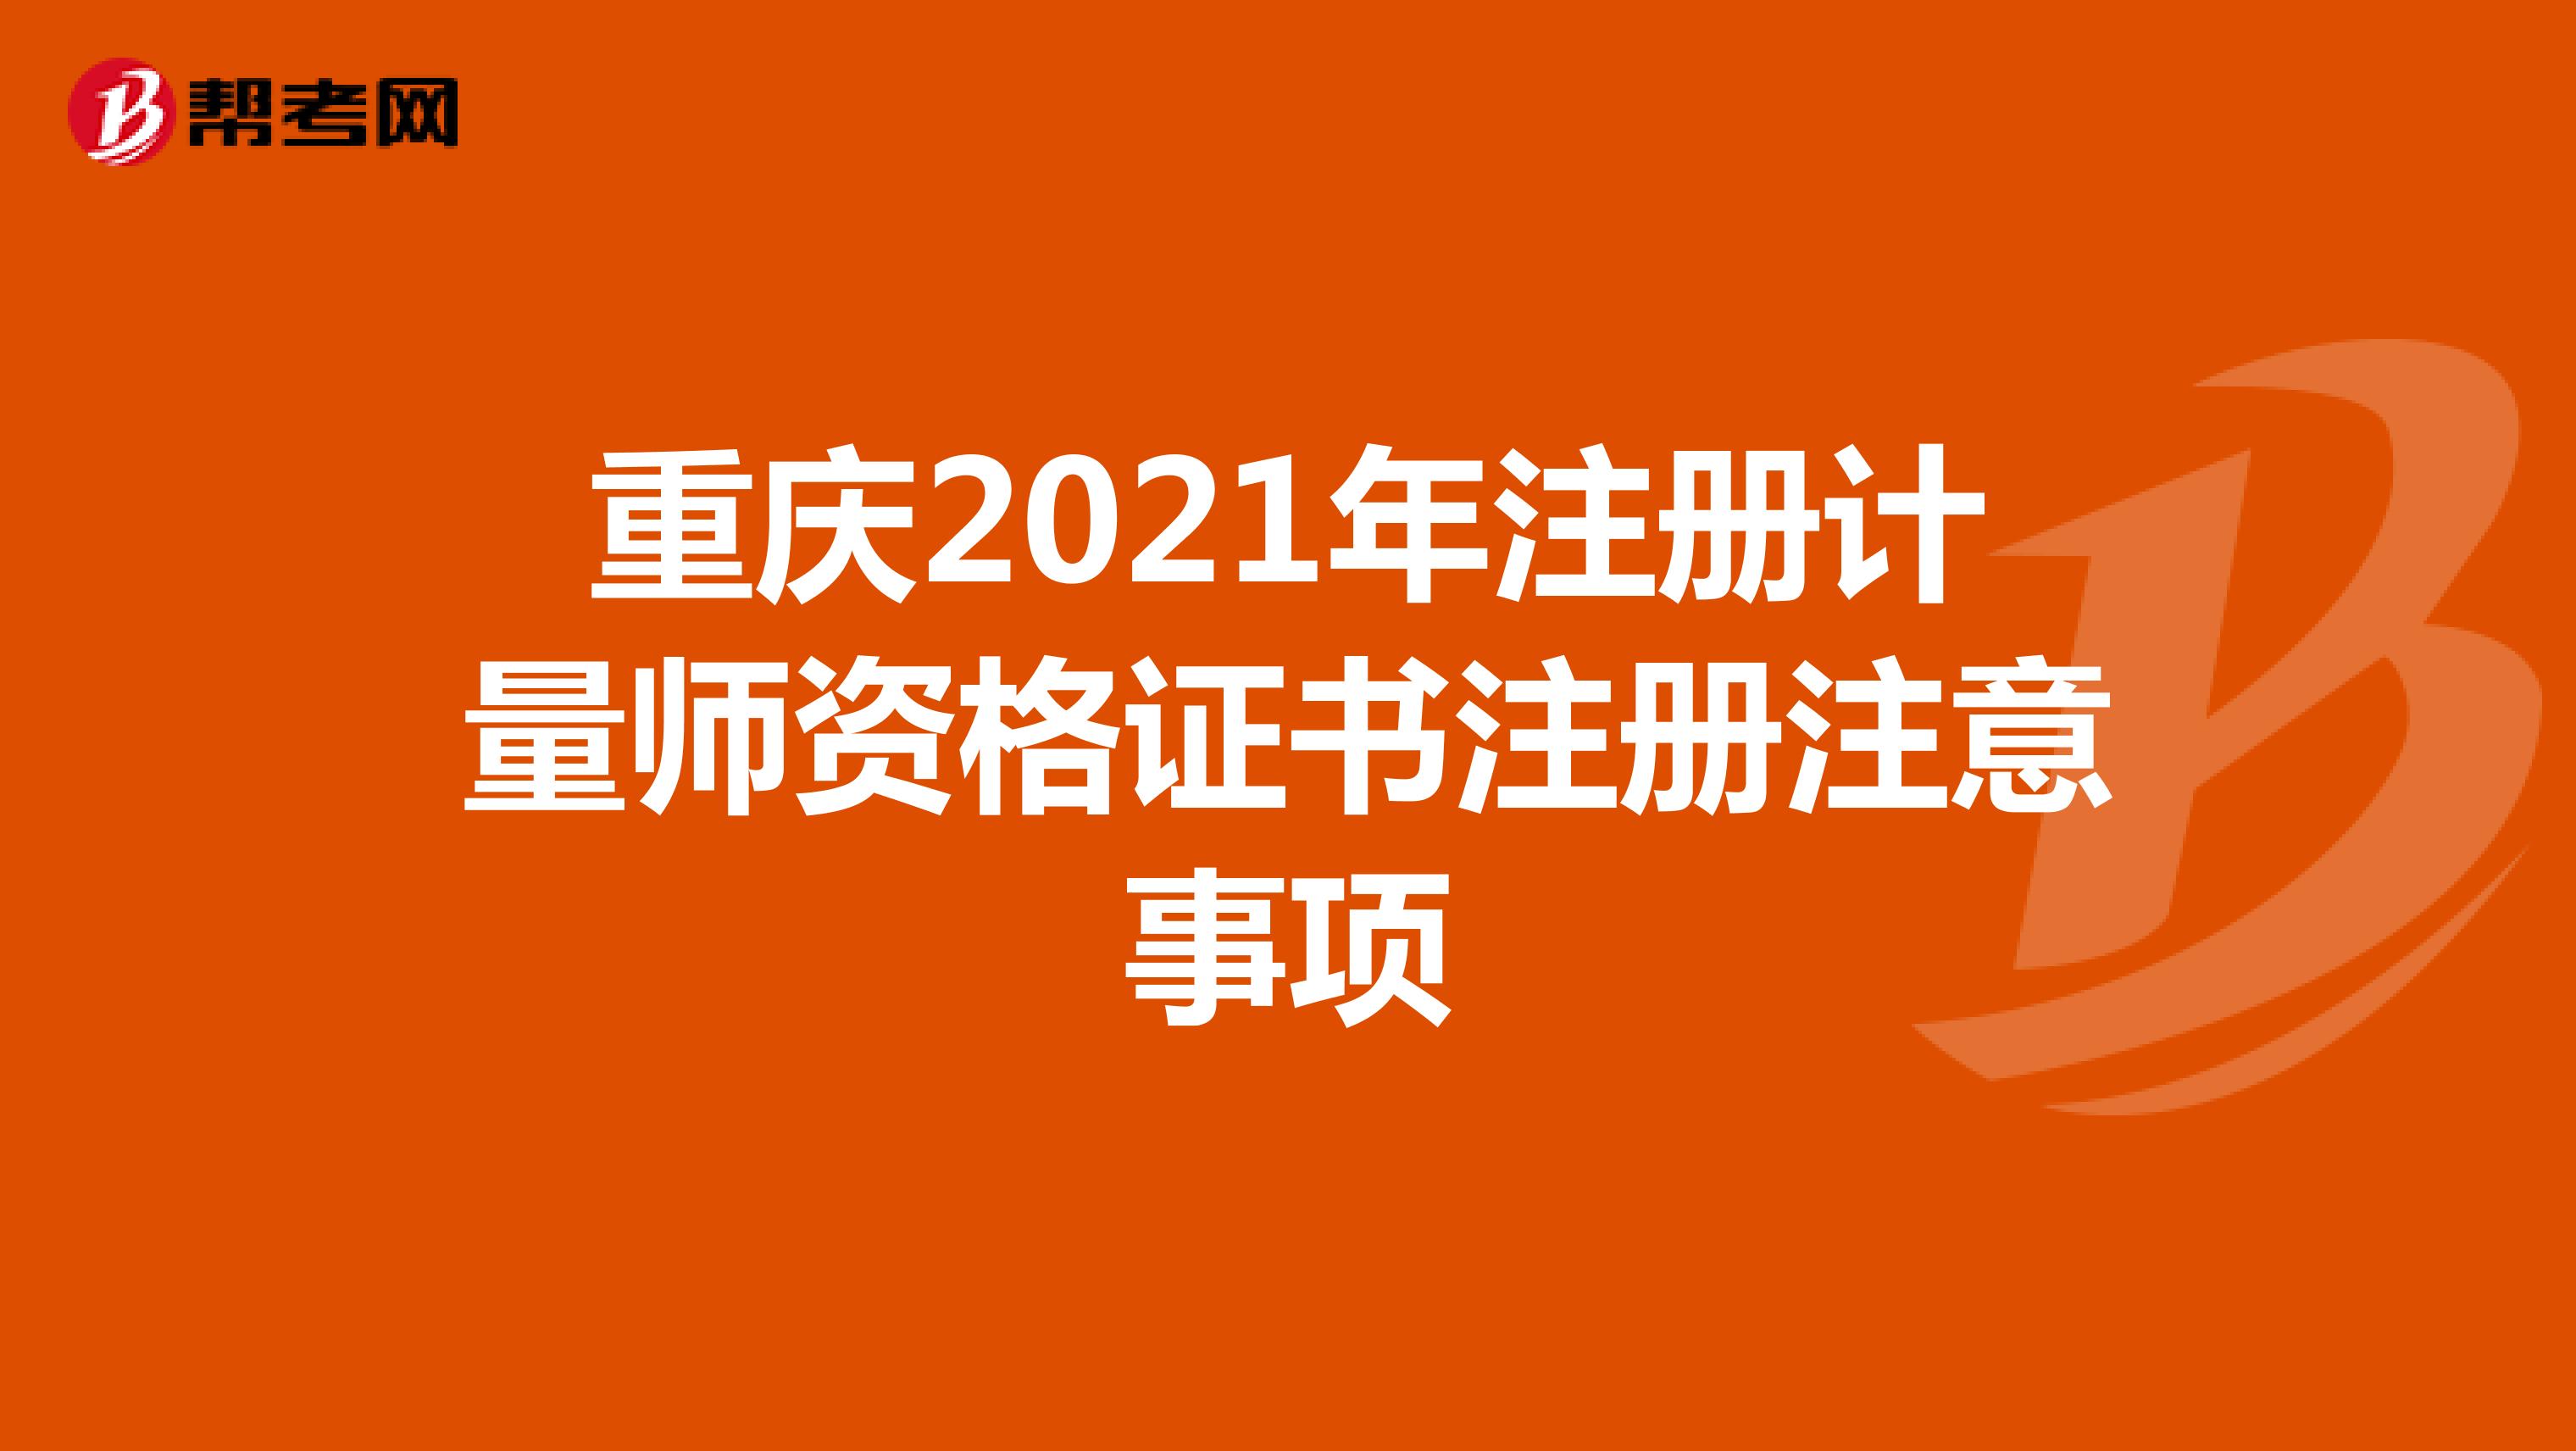 重庆2021年注册计量师资格证书注册注意事项